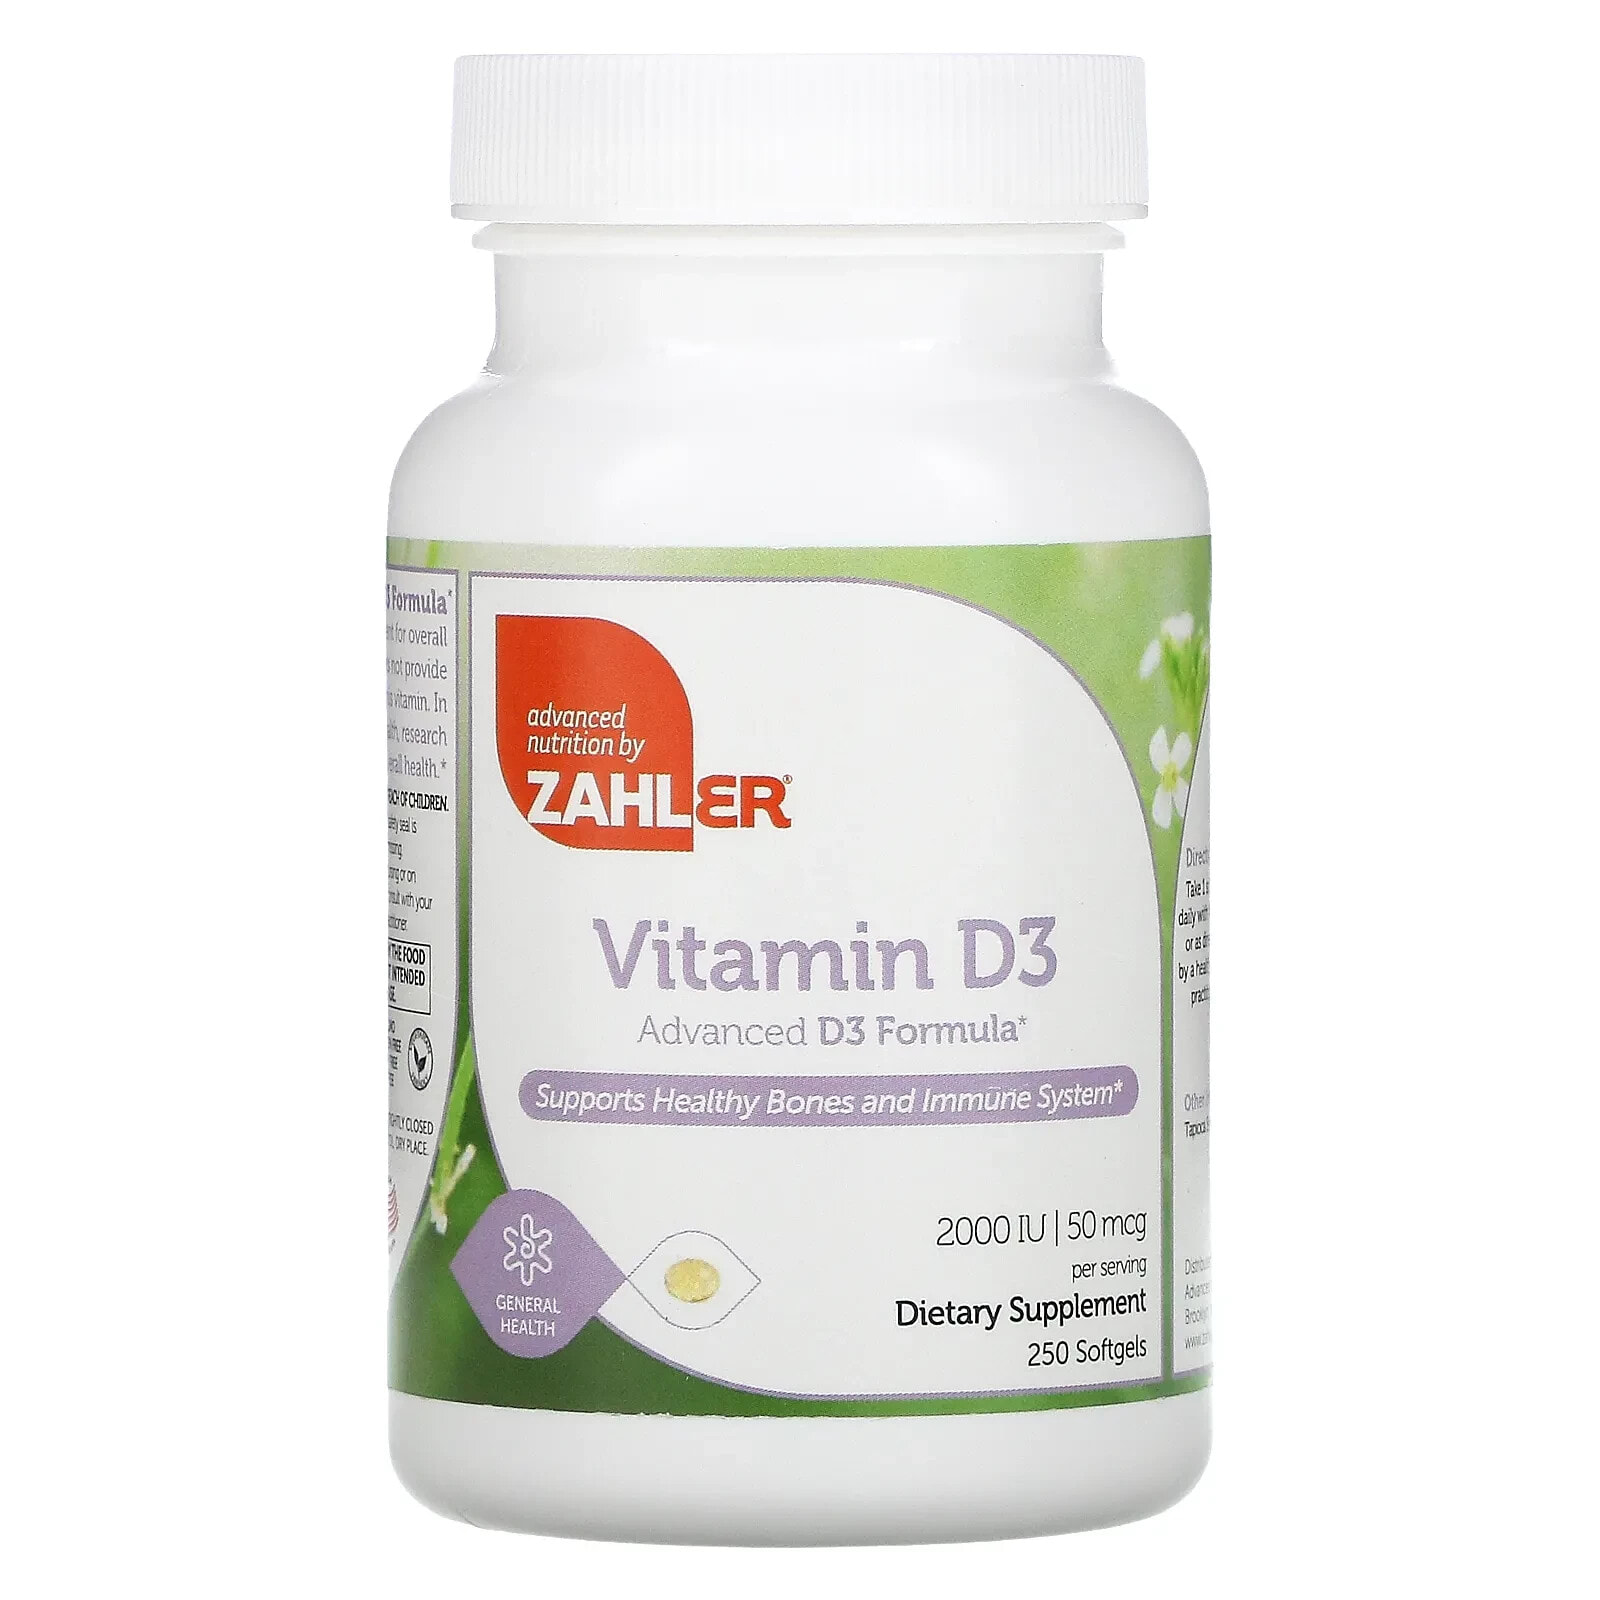 Vitamin D3, Advanced D3 Formula, 50 mcg (2,000 IU), 120 Softgels